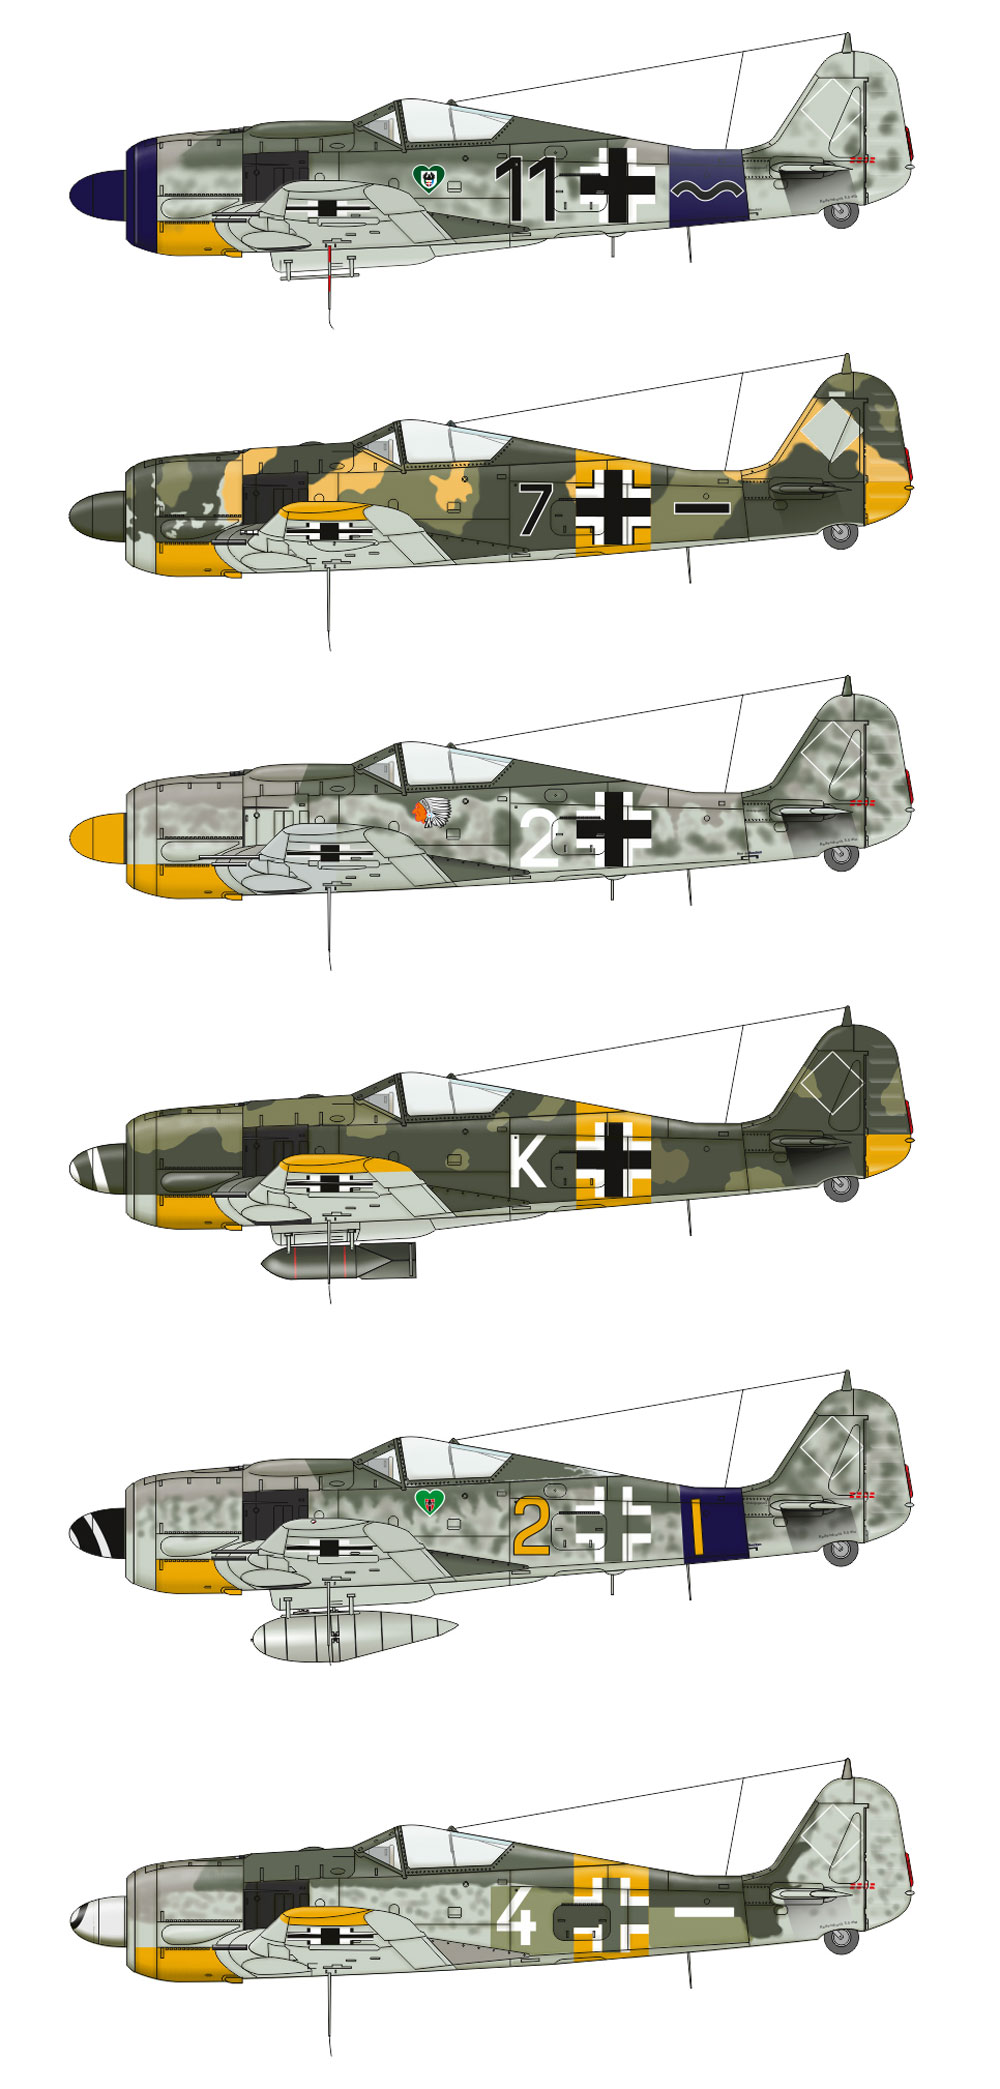 Fw190A-5/A-8 グリュンヘルツ デュアルコンボ プラモデル (エデュアルド 1/72 リミテッド エディション No.2122) 商品画像_2